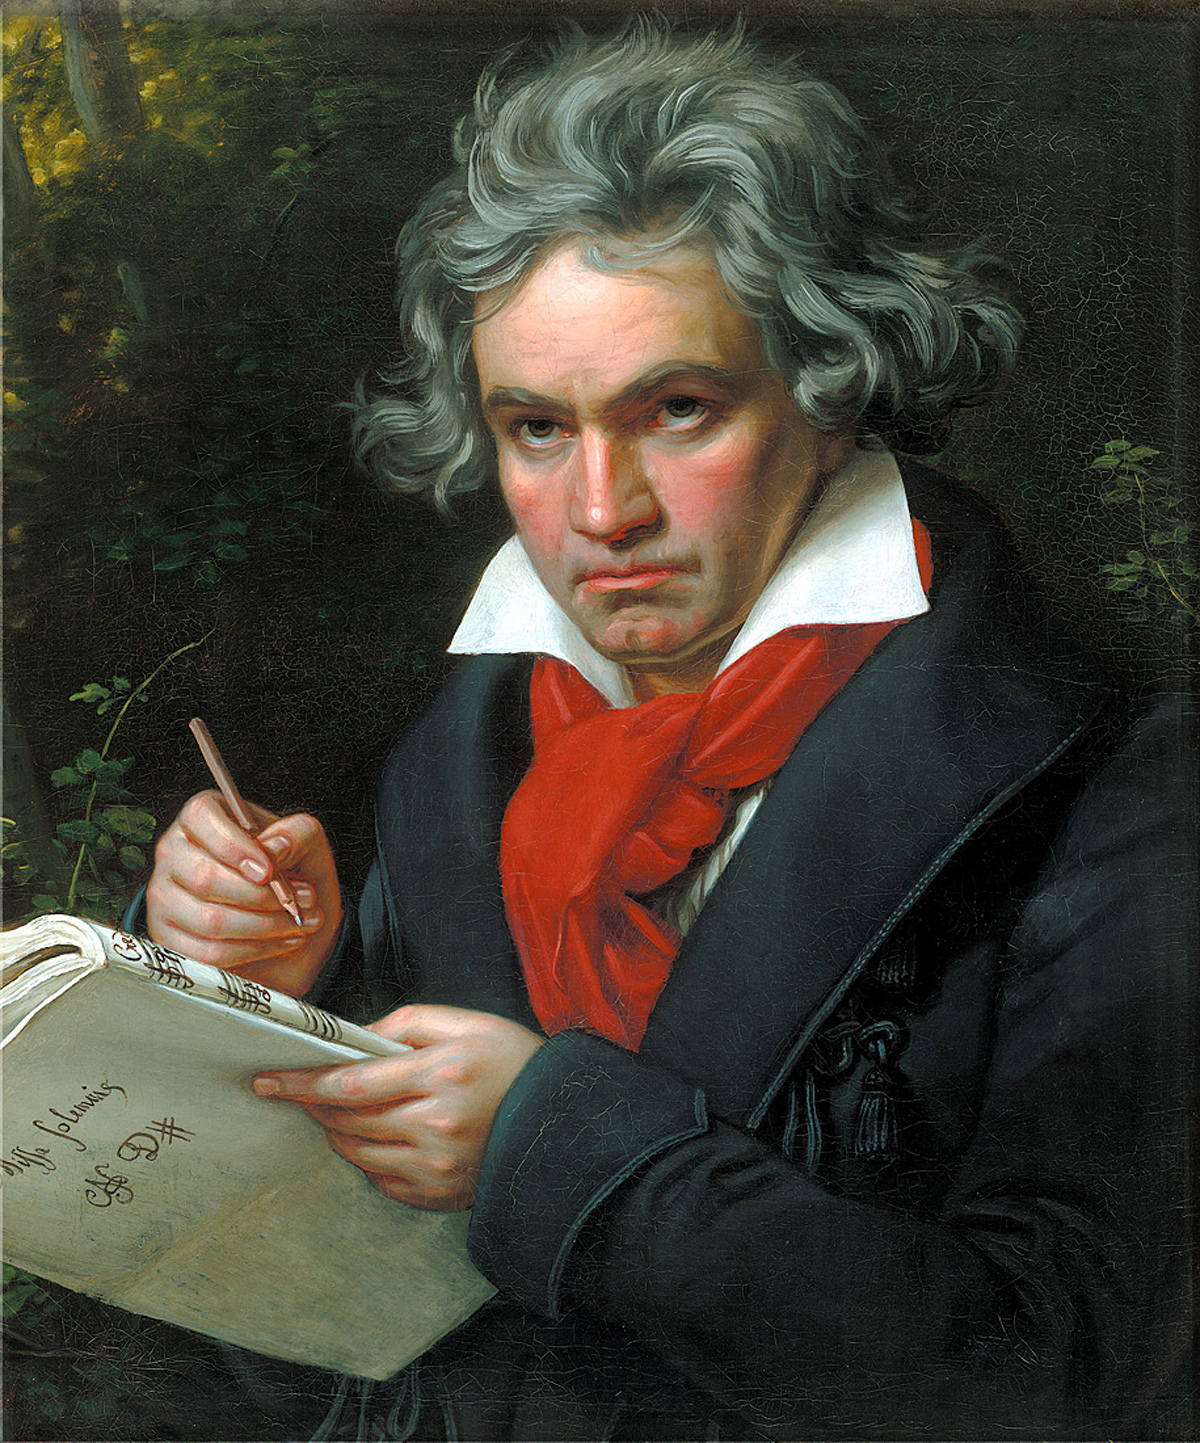 Sessizliin Bayapt: Ludwig van Beethoven